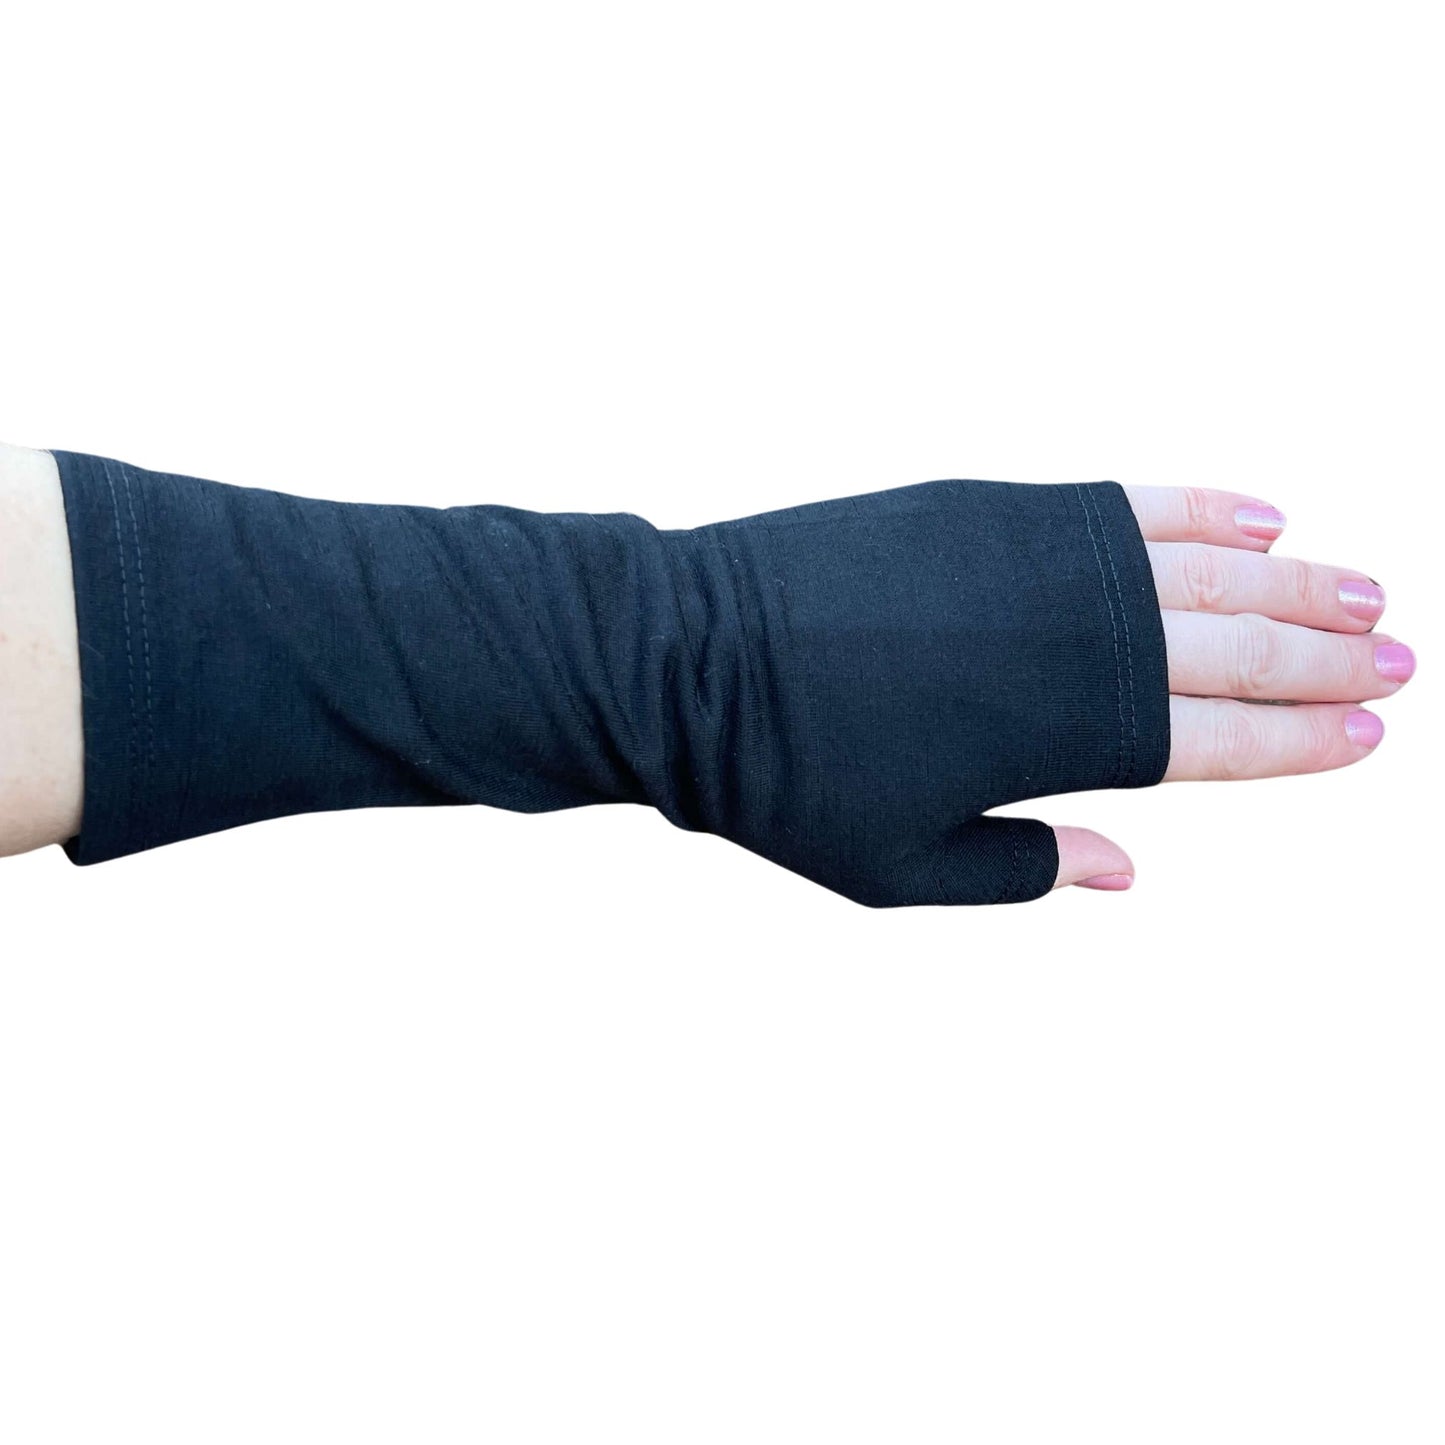 Fingerless merino gloves in black.